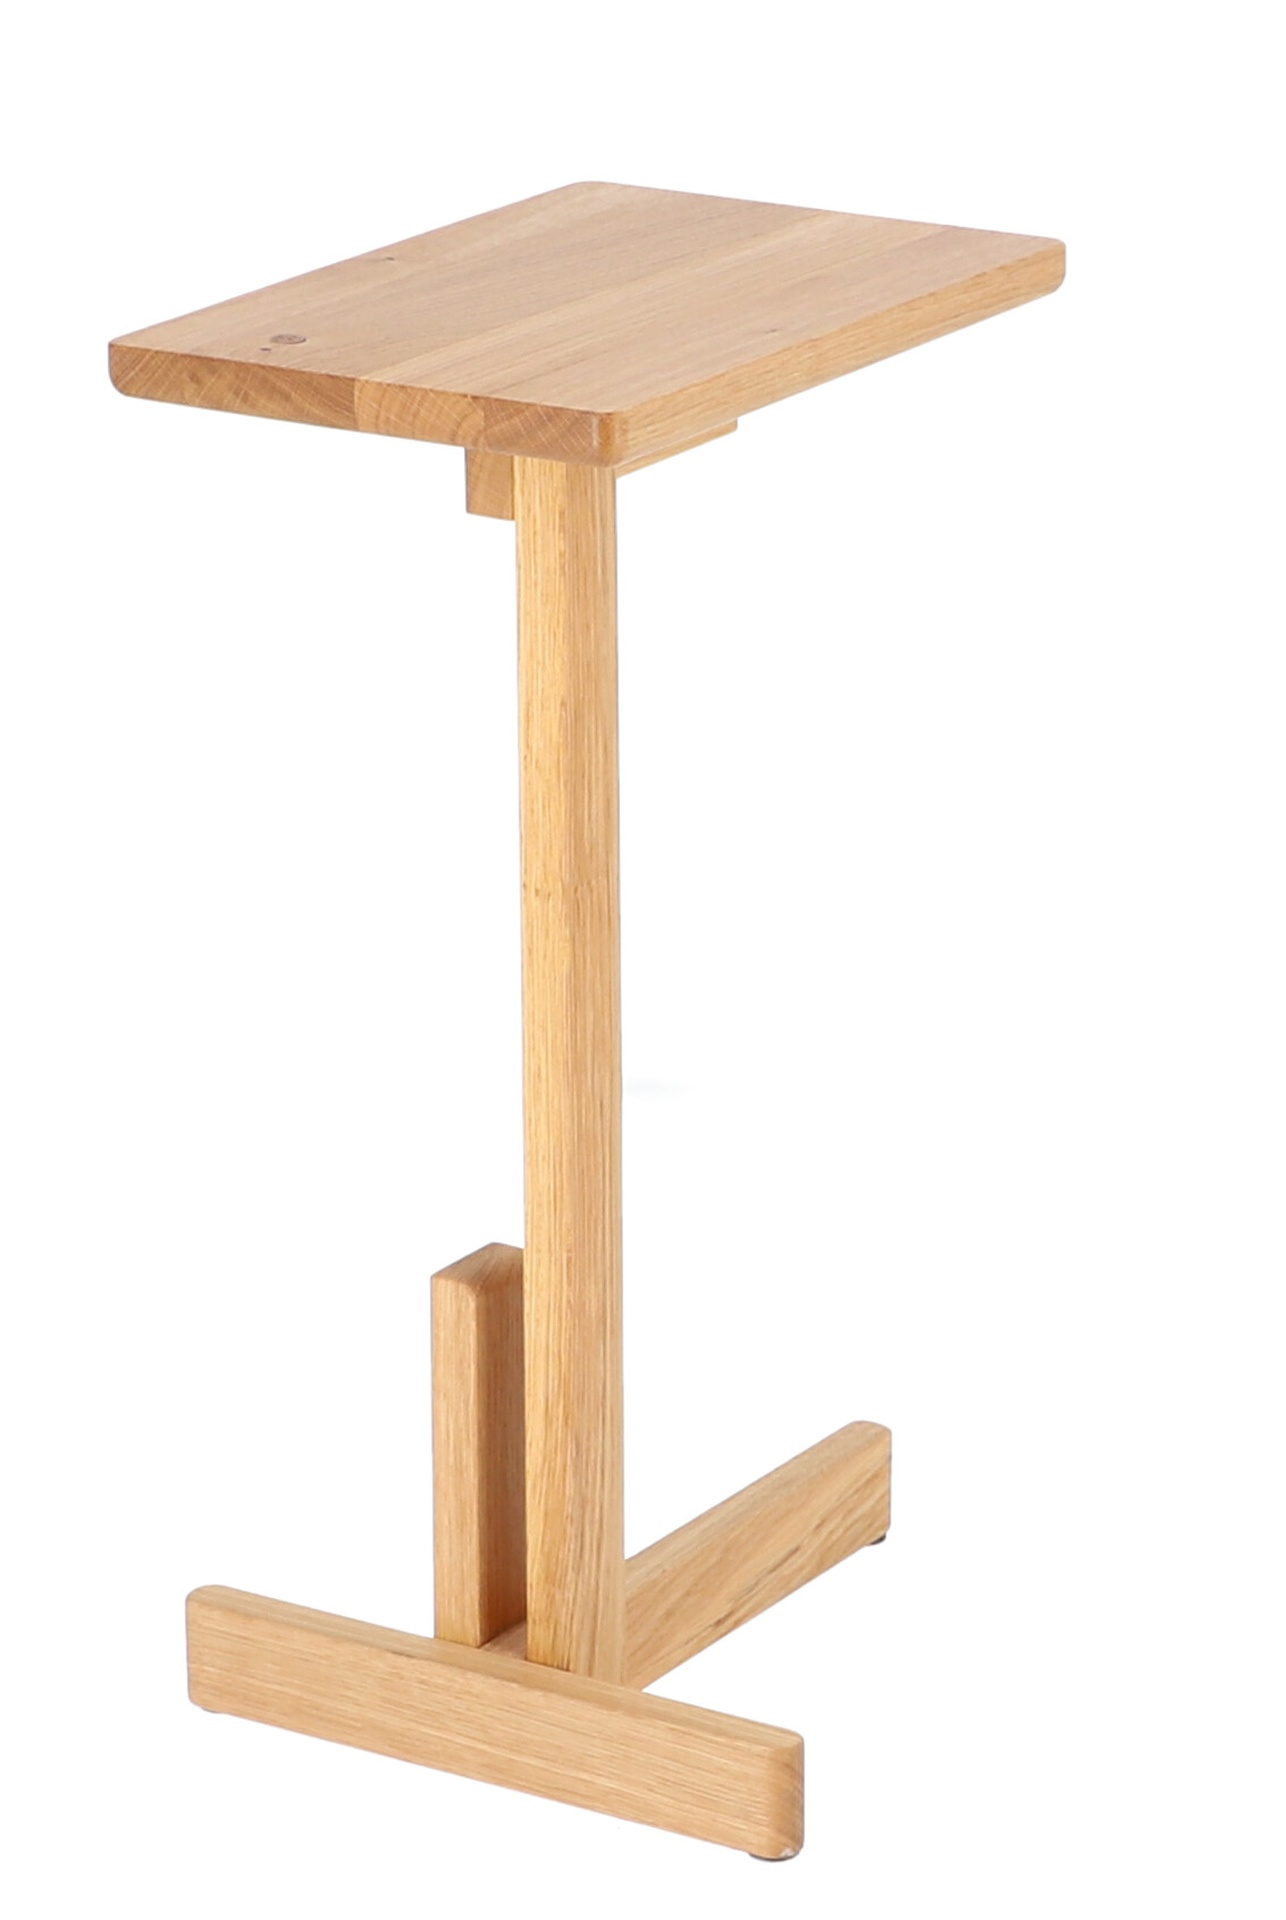 Der schlichte Beistelltisch Laurel wurde aus Eichenholz gefertigt. Besonders auffällig ist seine besondere Form. Der Tisch ist ein Produkt der Marke Jan Kurtz.